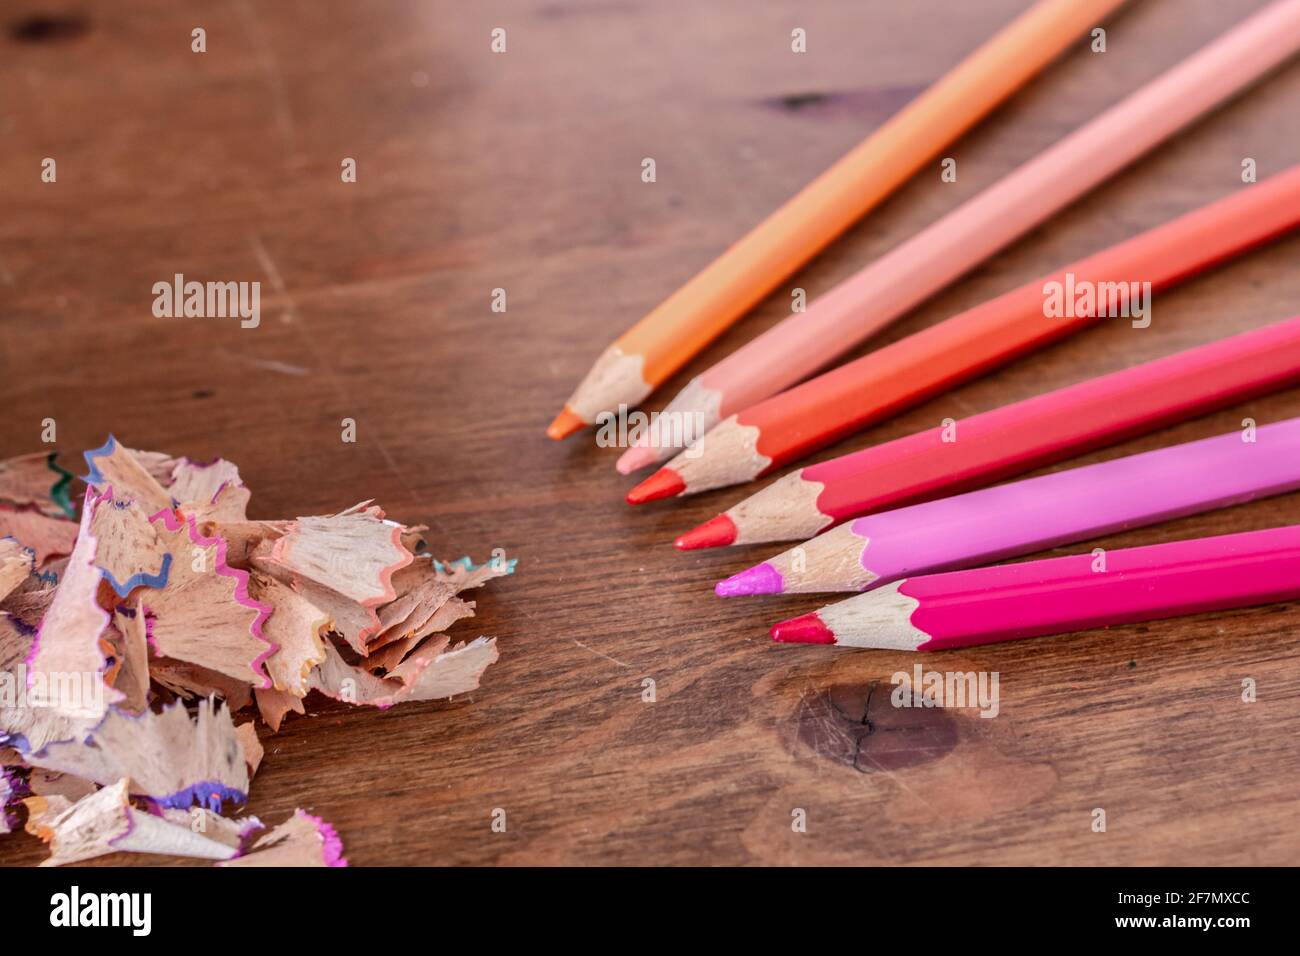 Buntstiftspangen, die aus einem blauen Bleistiftspitzer ohne Deckel auf einen Hartholztisch auslaufen, Farben sind violett, orange, rosa, gelb, Weichfokus. Stockfoto